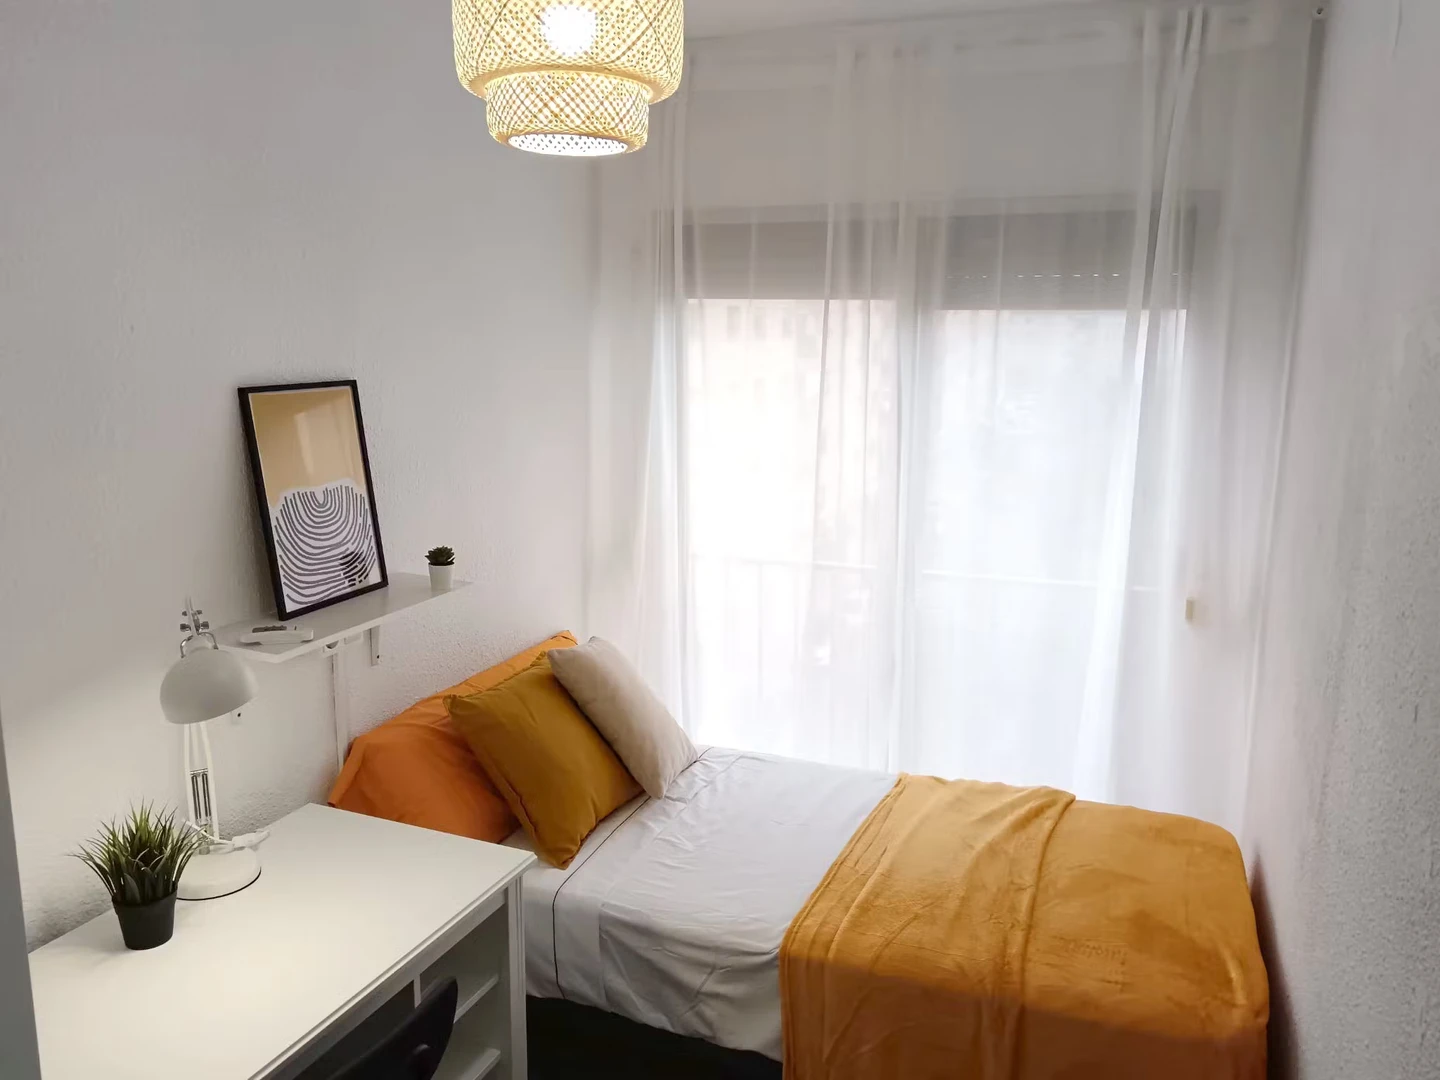 Tarragona de çift kişilik yataklı kiralık oda